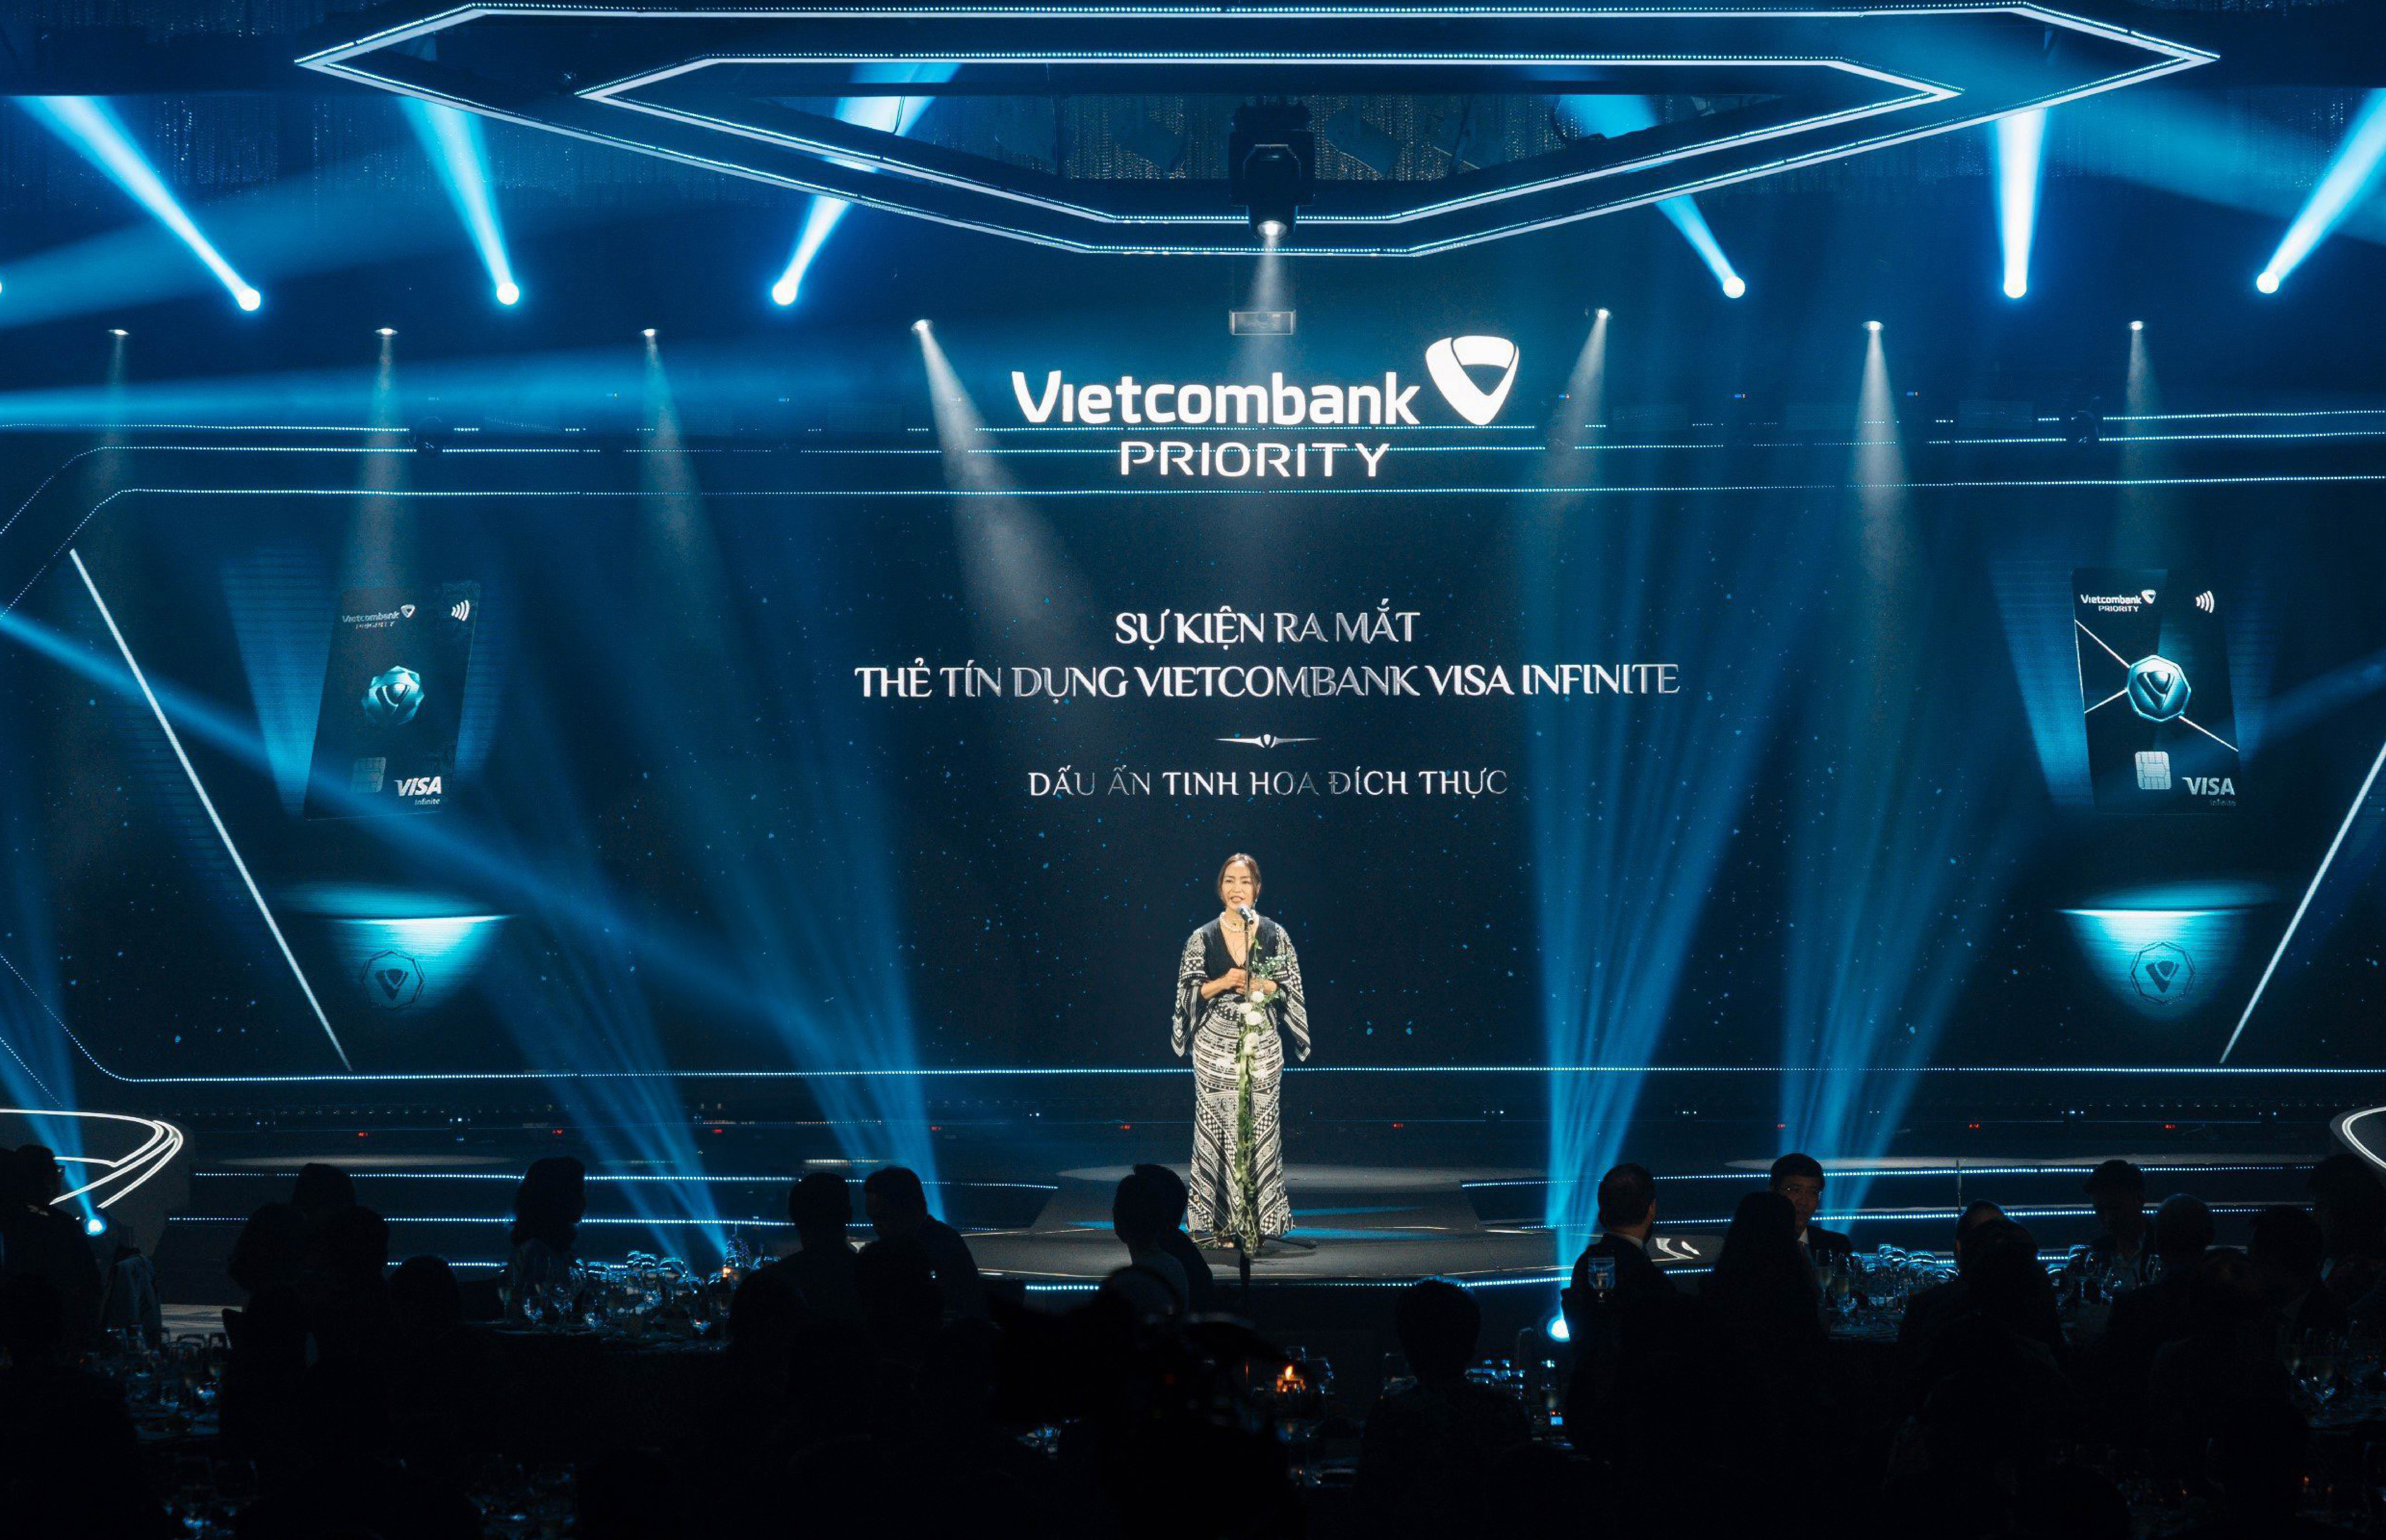 Sự kiện ra mắt thẻ Vietcombank Visa Infinite được tổ chức quy m&ocirc; giới hạn tại H&agrave; Nội tối 1/12 vừa qua.